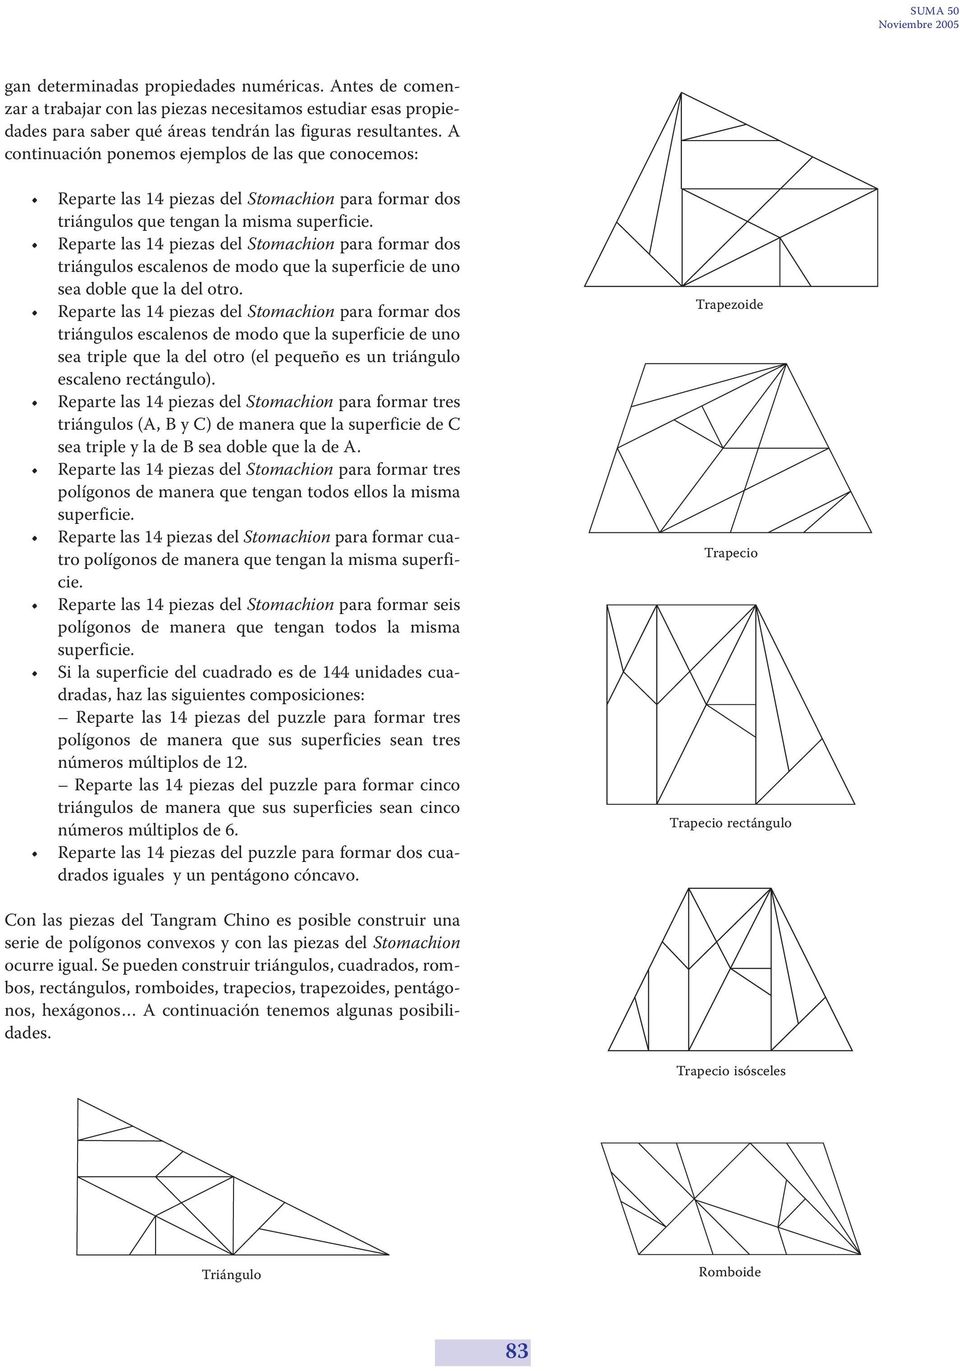 Reparte las 4 piezas del Stomachion para formar dos triángulos escalenos de modo que la superficie de uno sea doble que la del otro.